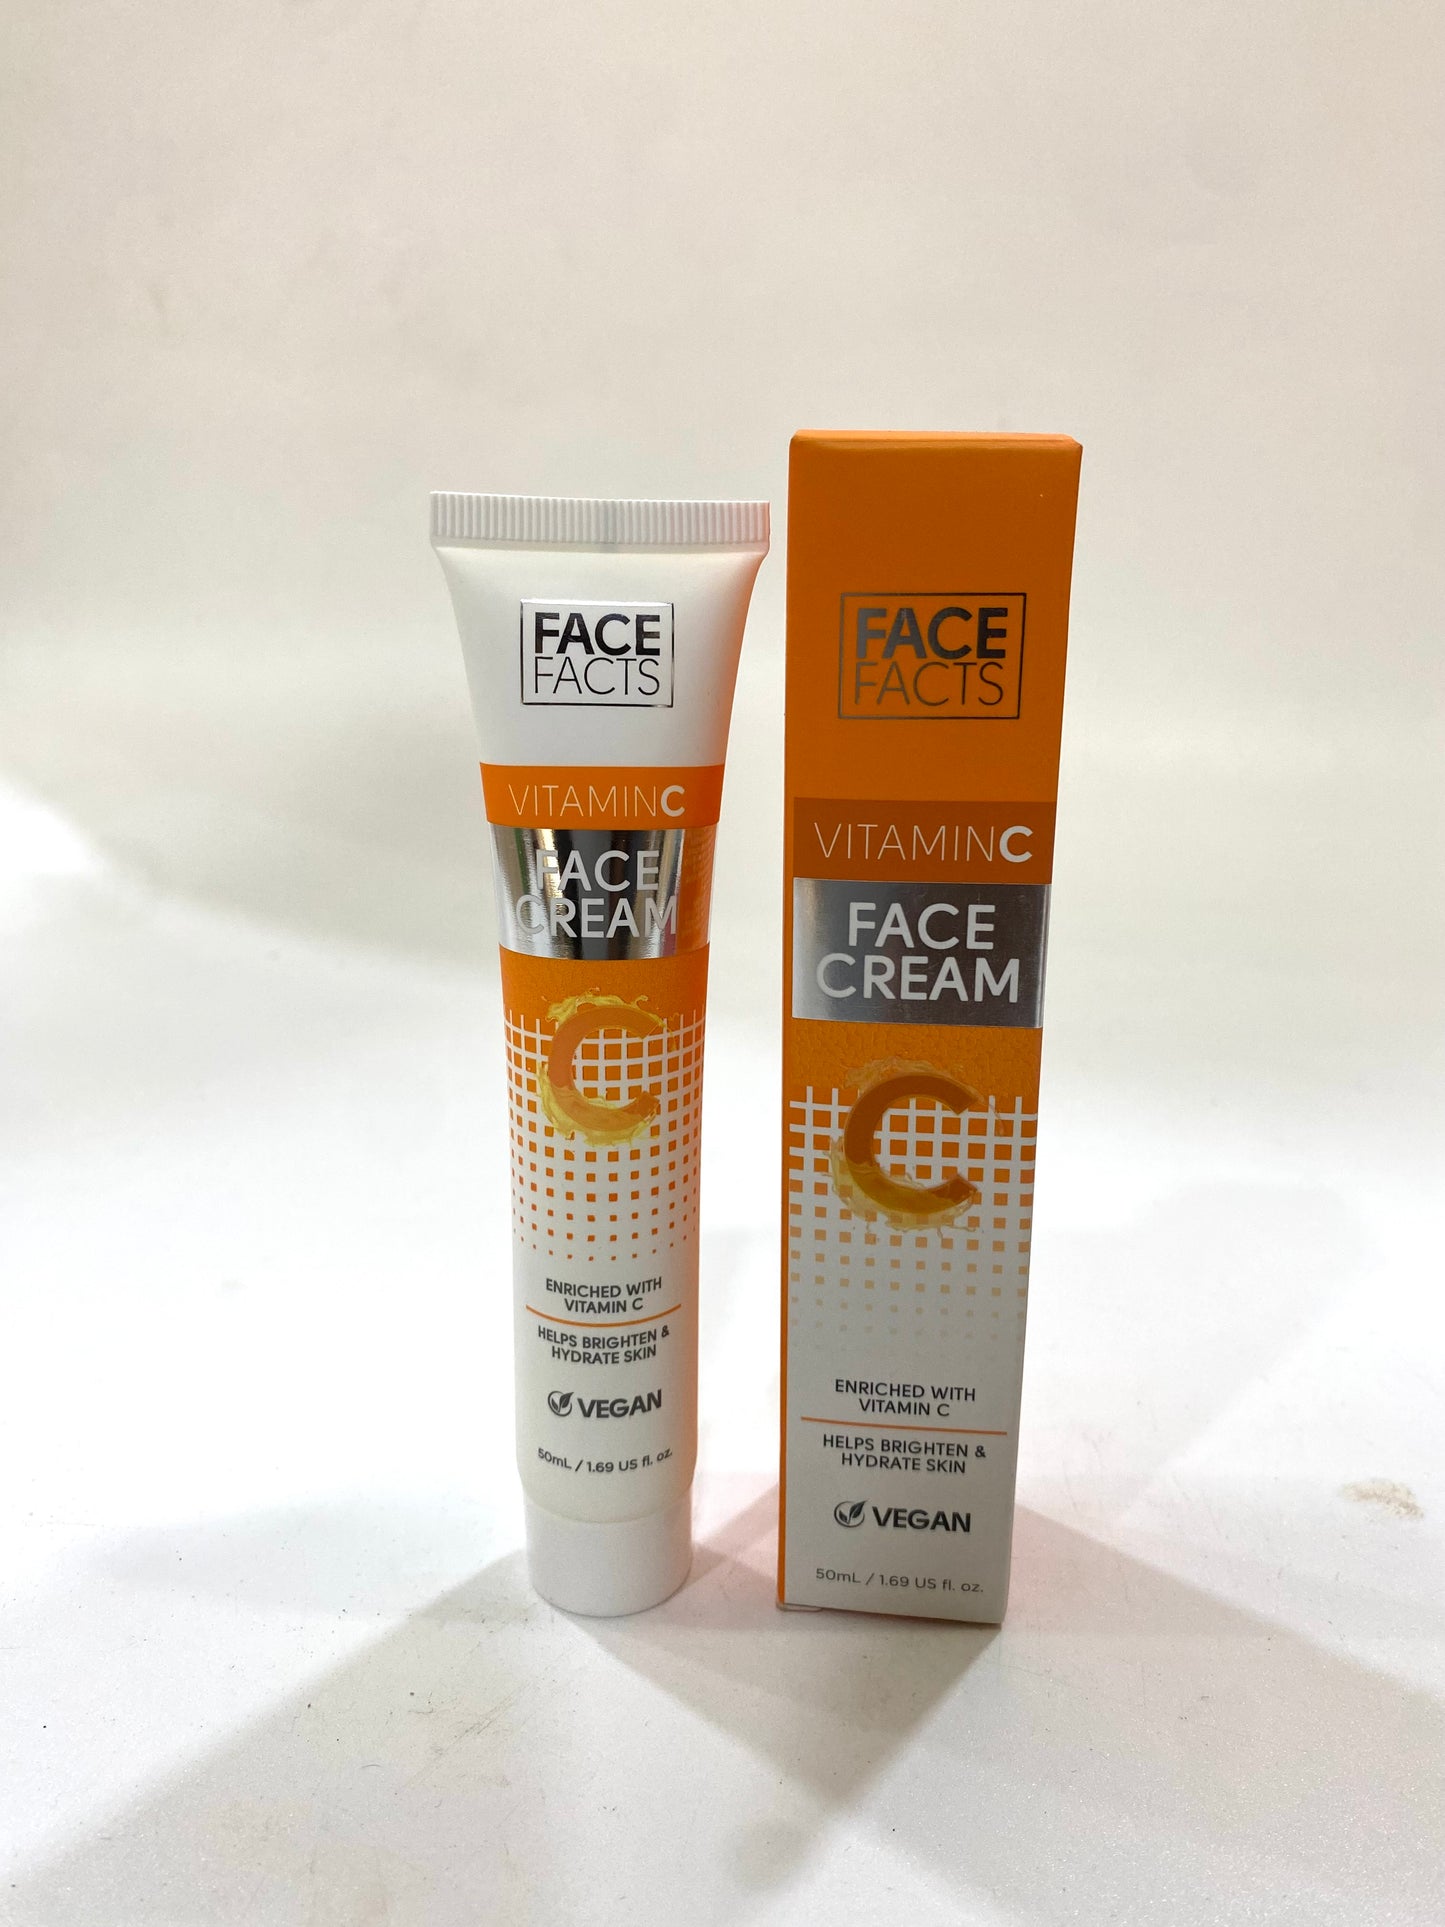 Face Facts Vitamin C Face Cream